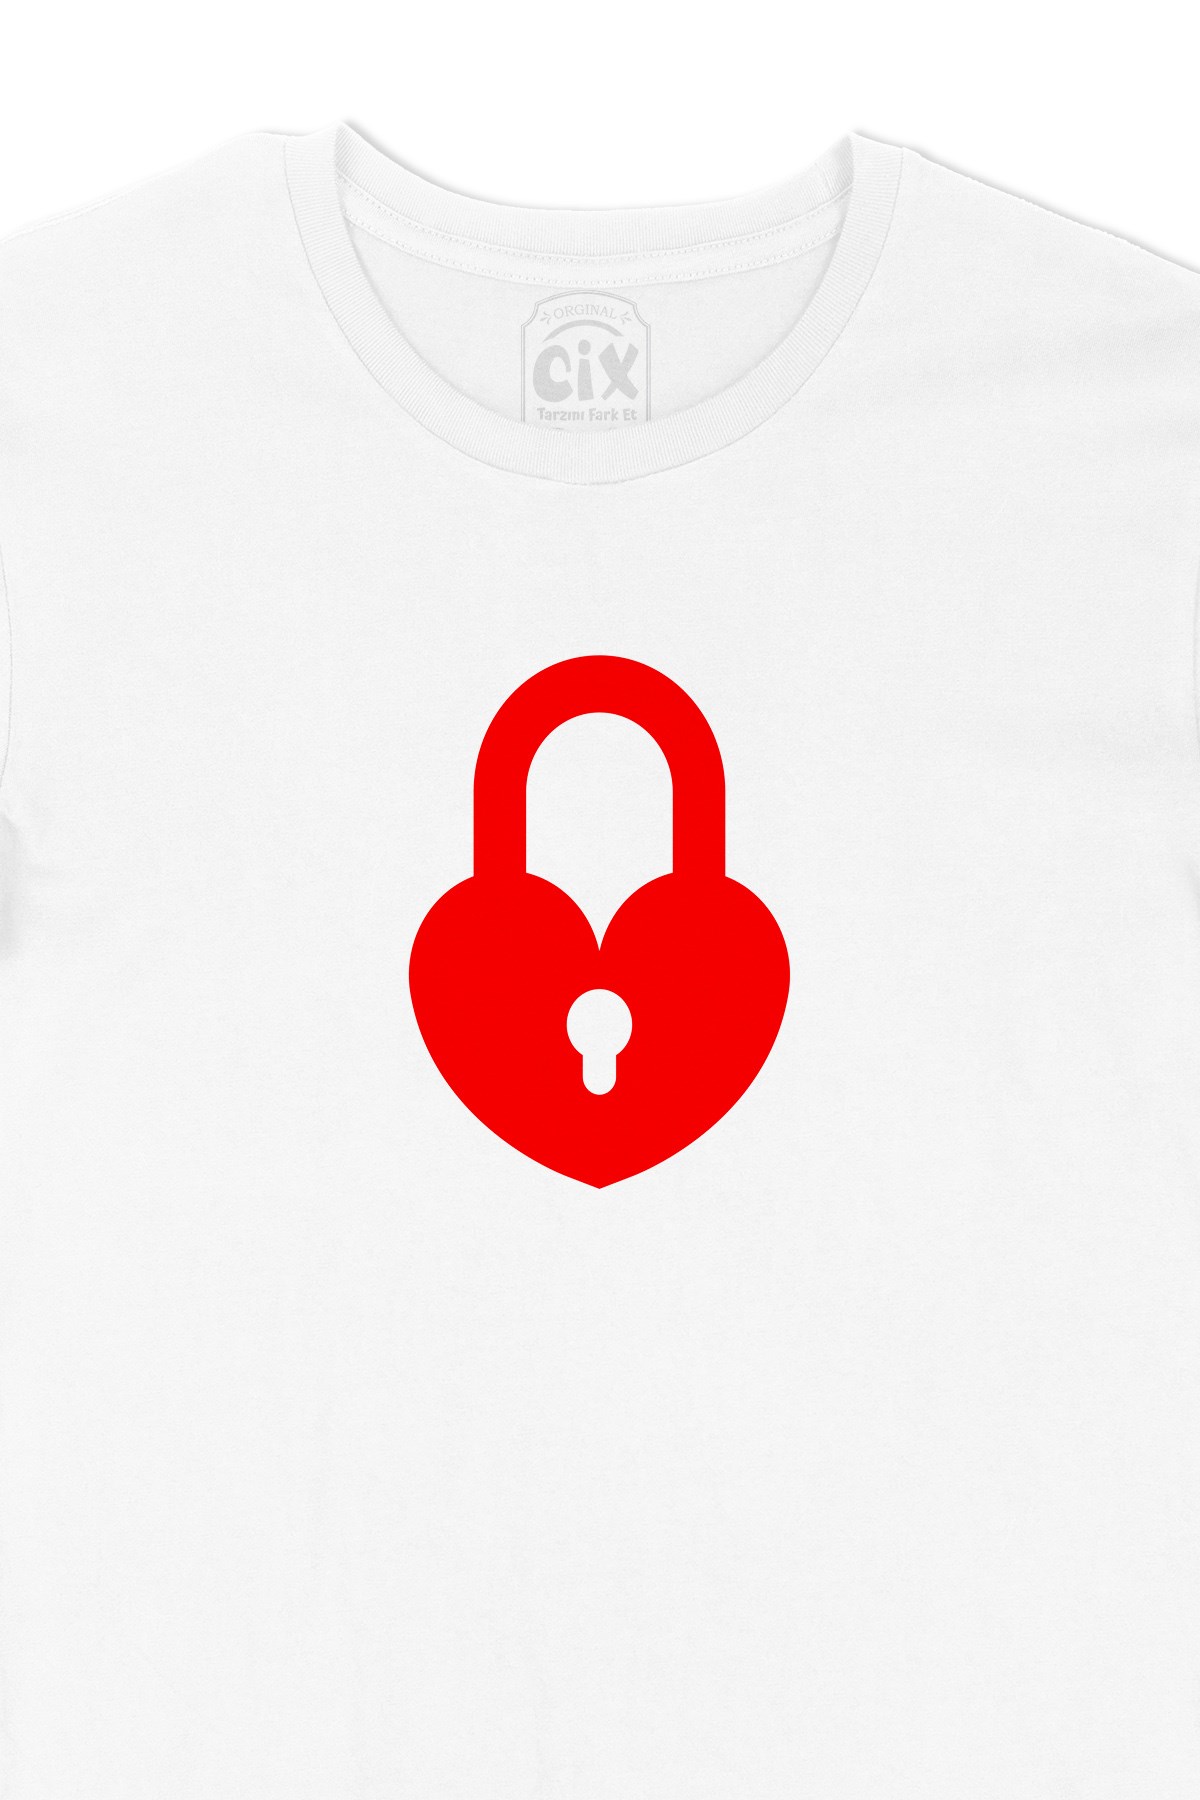 Cix Kalbim Kapalı Tişört - Ücretsiz Kargo